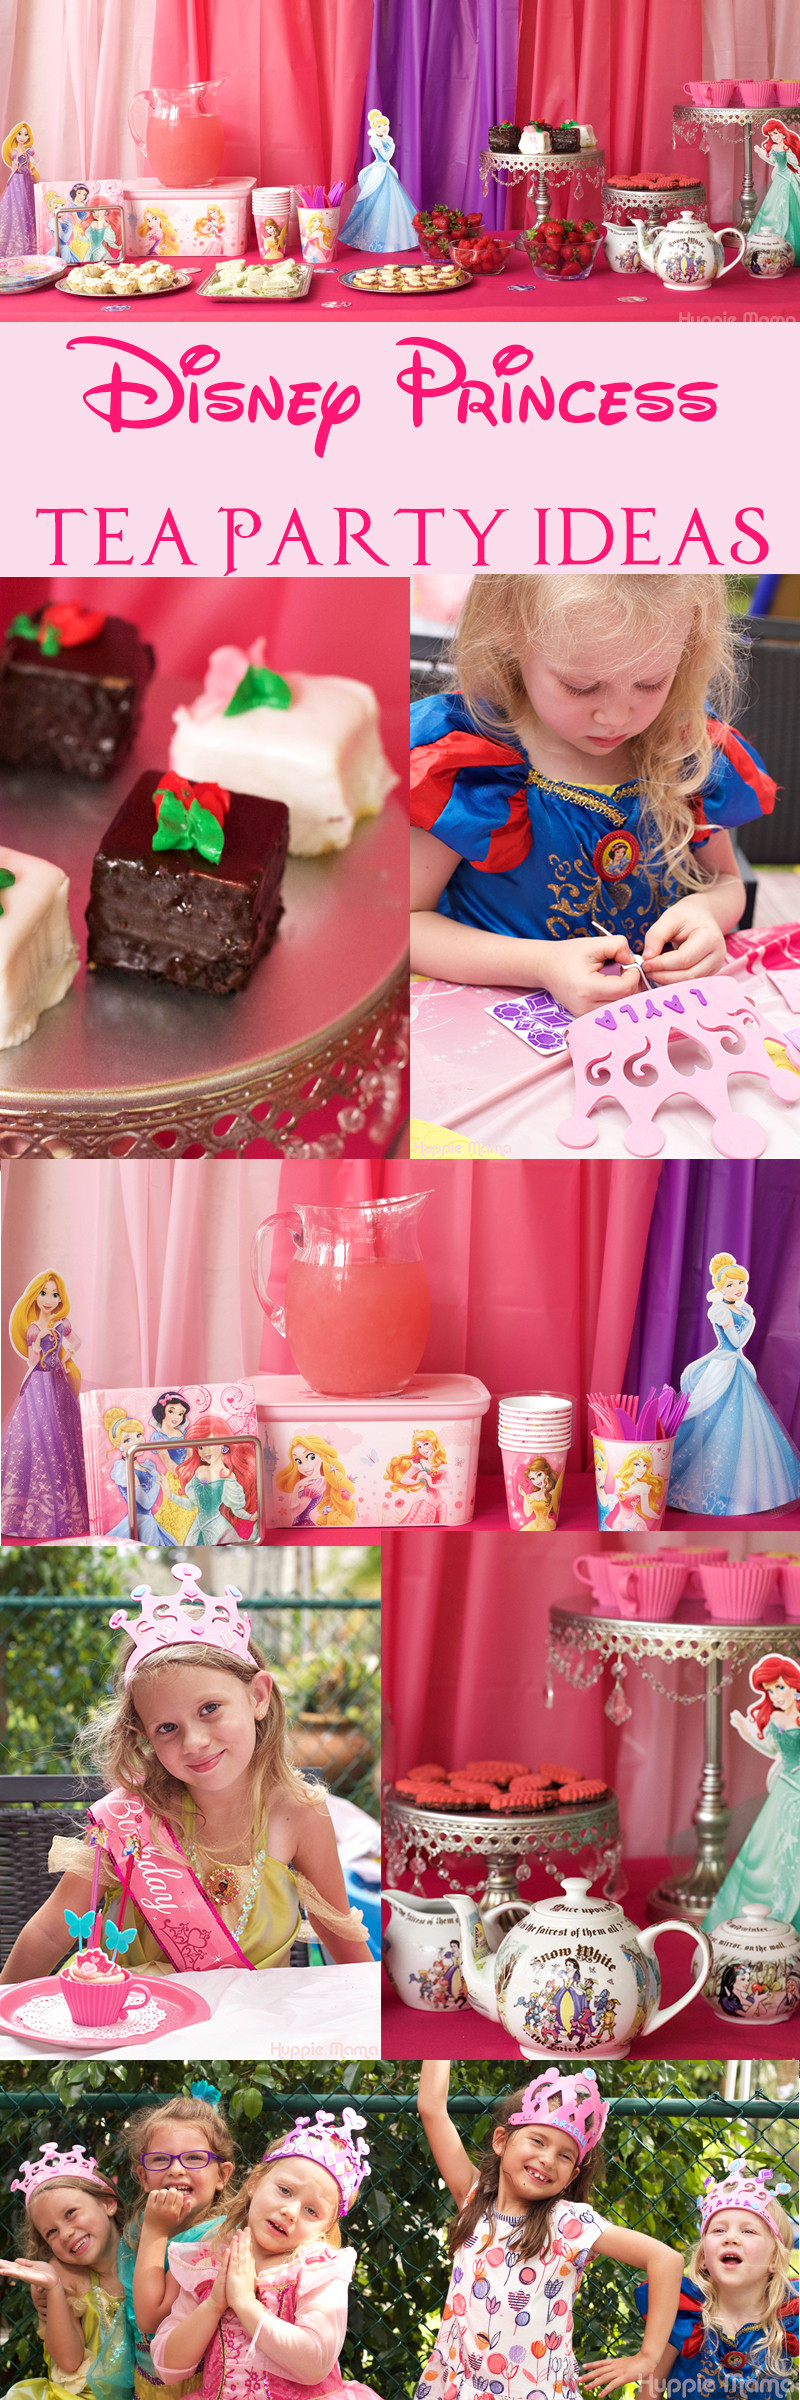 Disney Princess Tea Party Ideas
 Disney Princess Tea Party Ideas Our Potluck Family